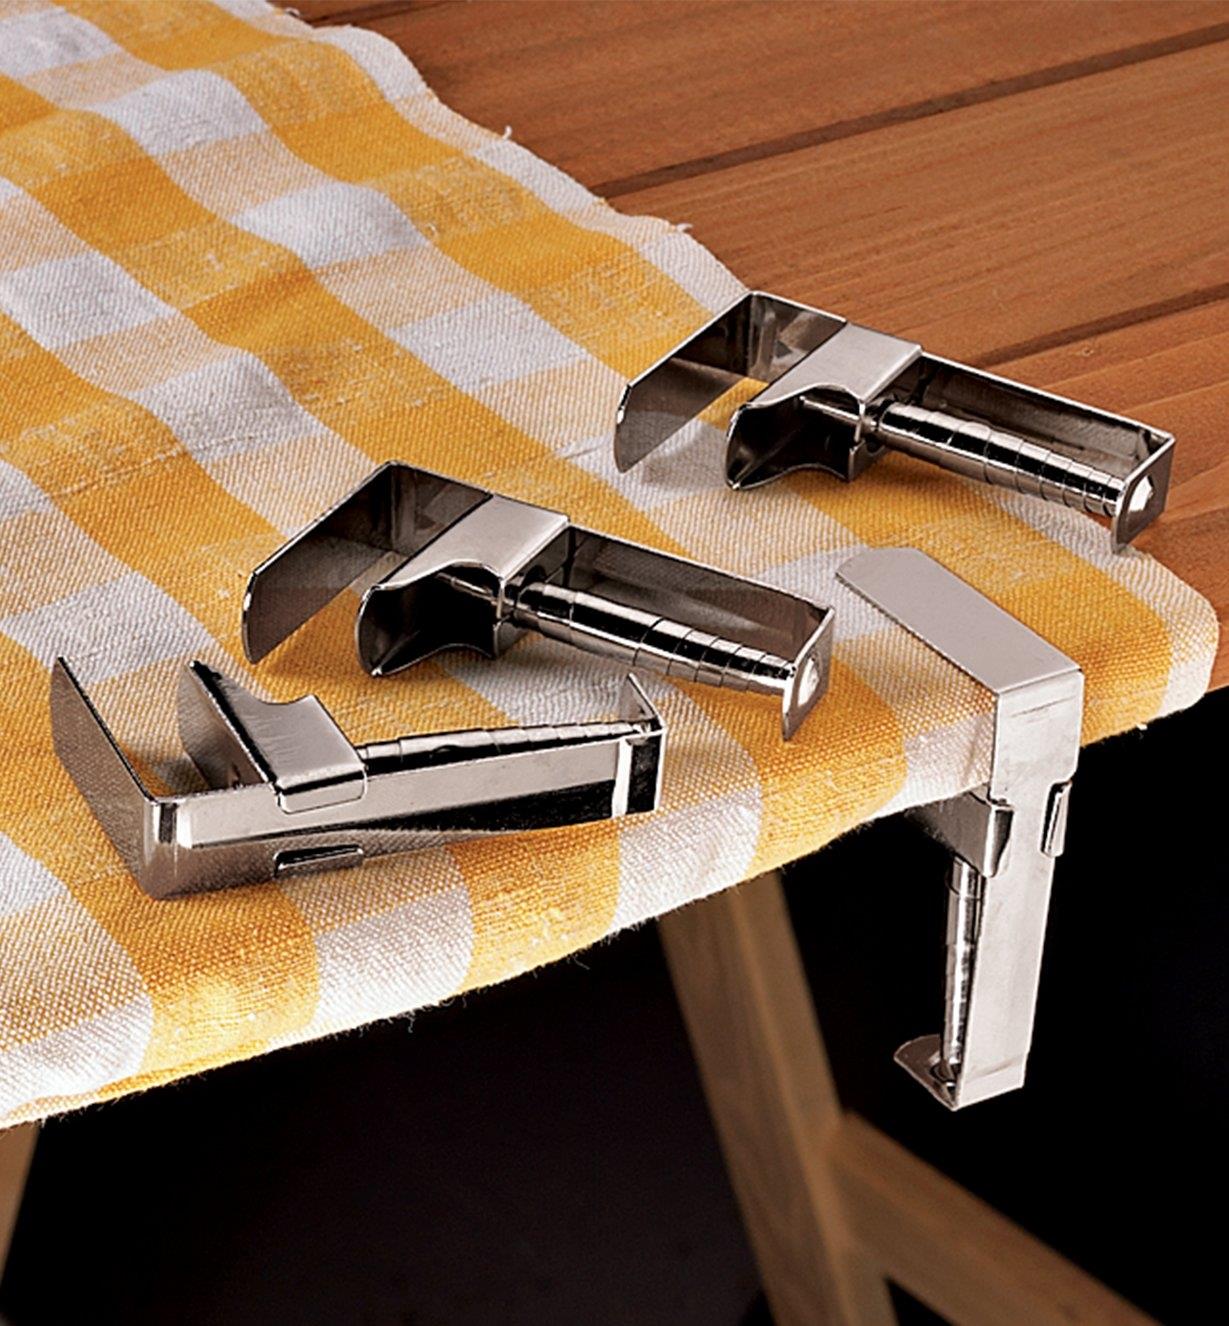 Une pince-nappe retenant une nappe sur une table à pique-nique et trois pince-nappe reposant sur la table